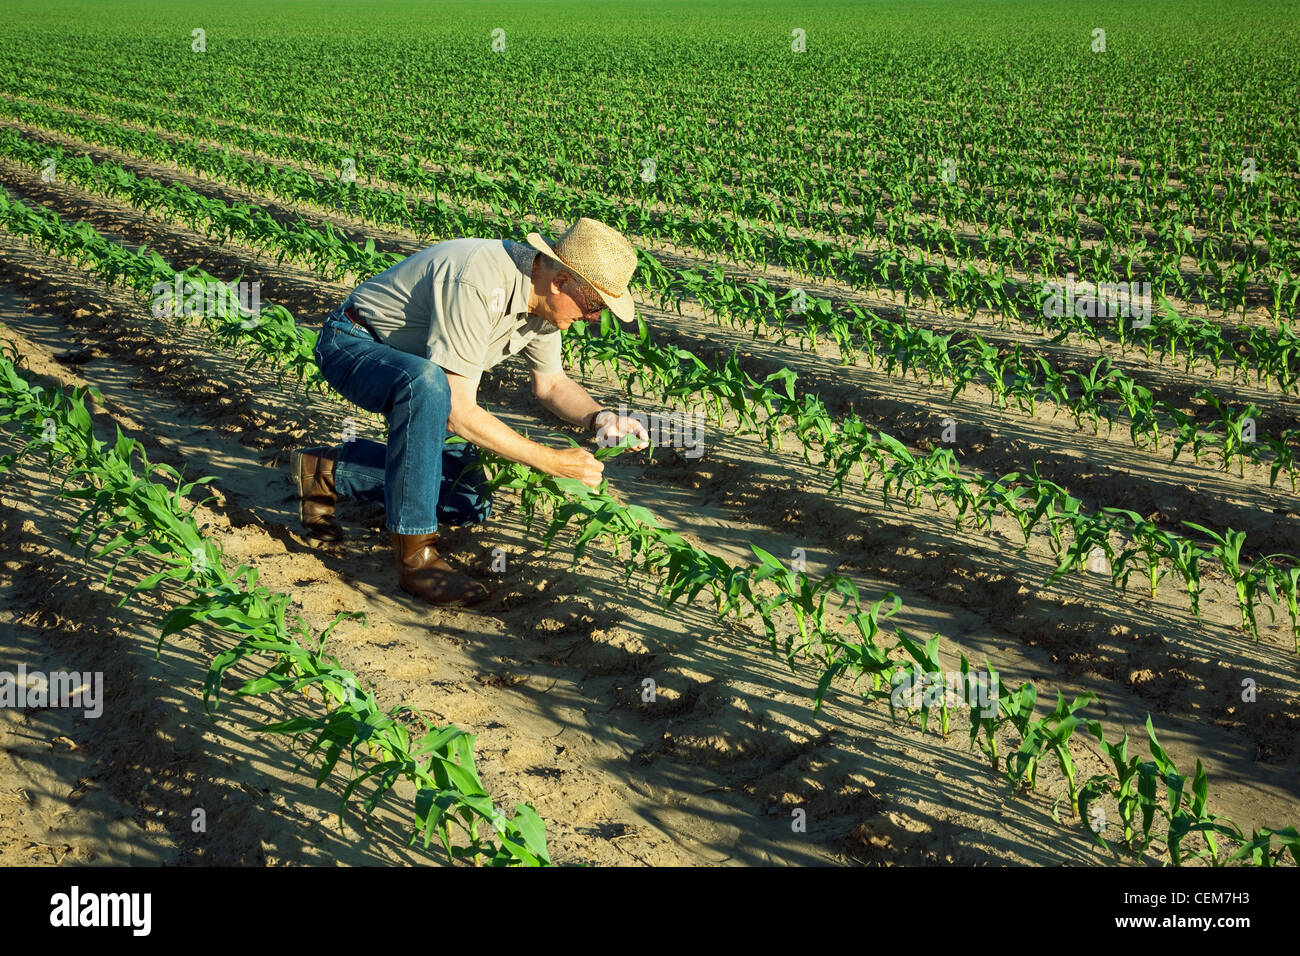 Agricultura - Un agricultor (agricultor) examina el crecimiento temprano de las plantas de maíz en grano 6 hojitas / cerca de Inglaterra, Arkansas, Estados Unidos. Foto de stock